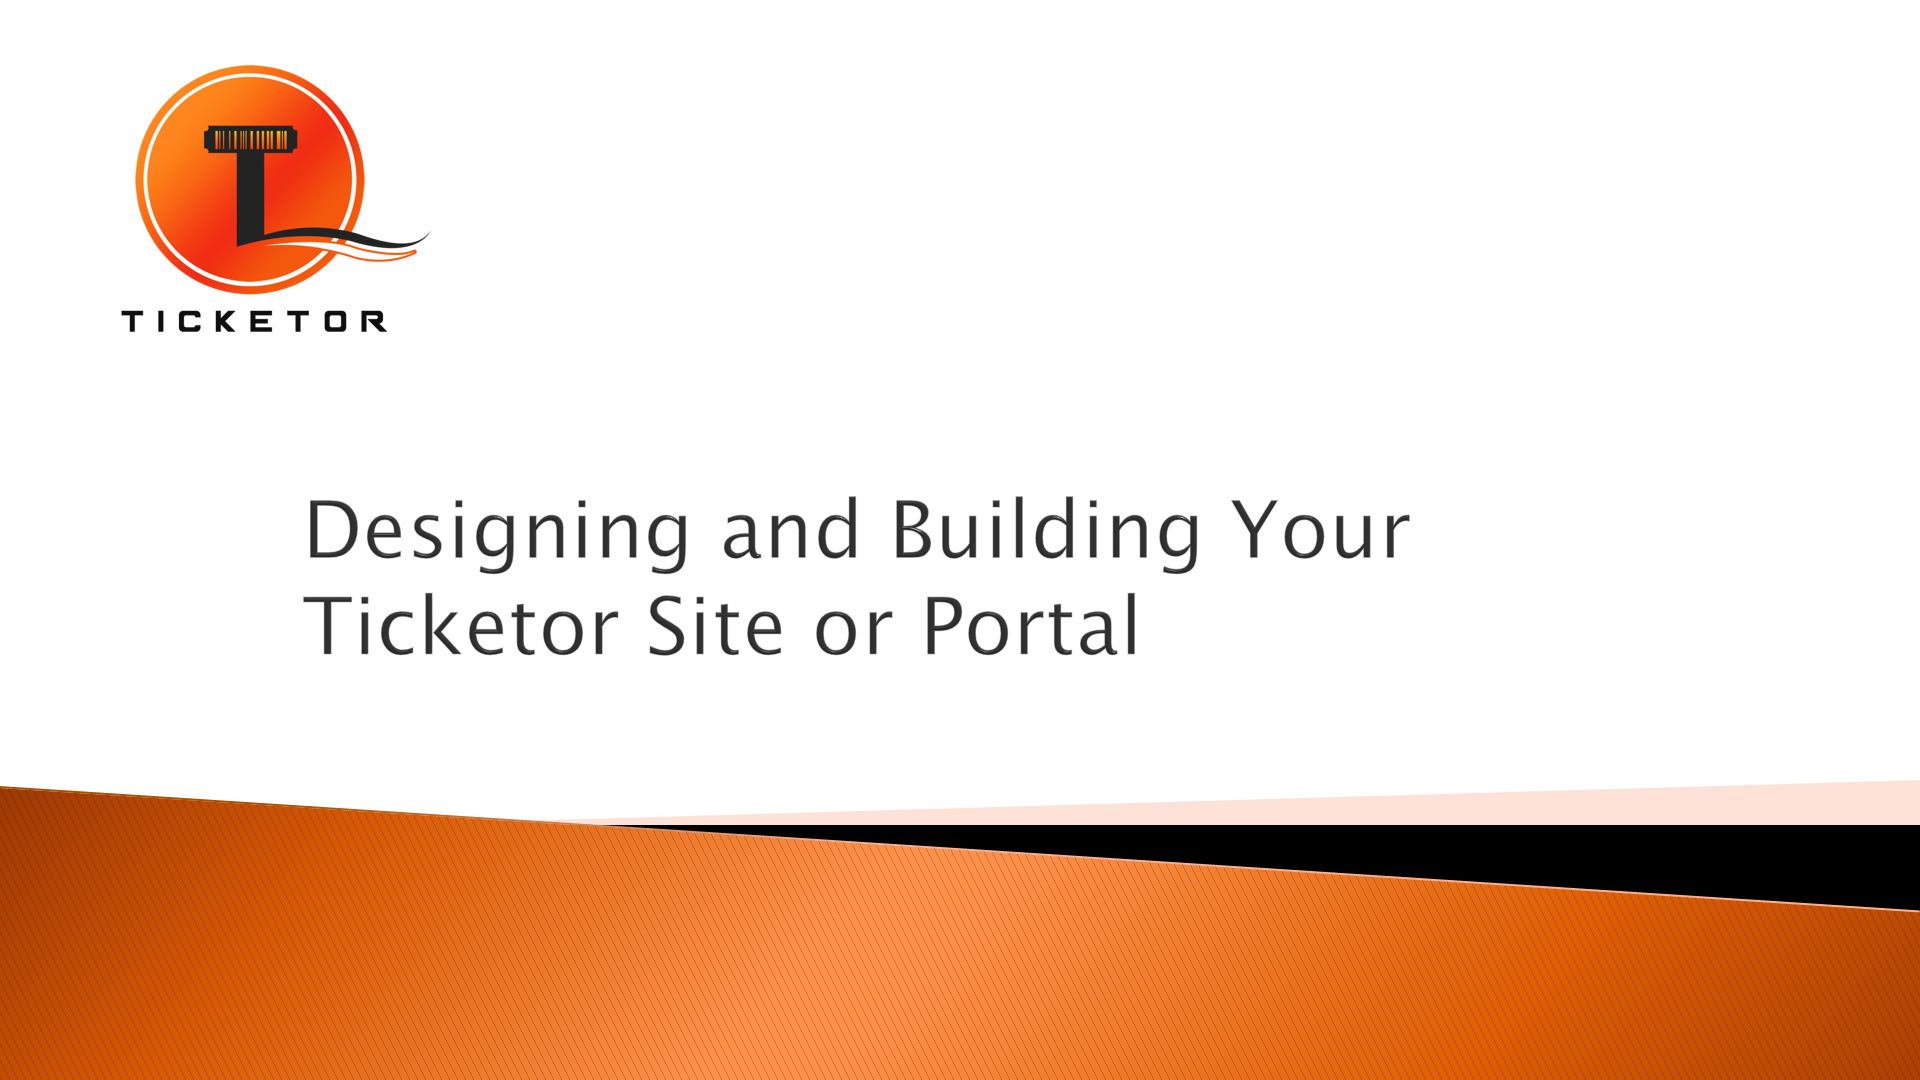 Conception et création de votre site ou portail Ticketor ou intégration à votre site